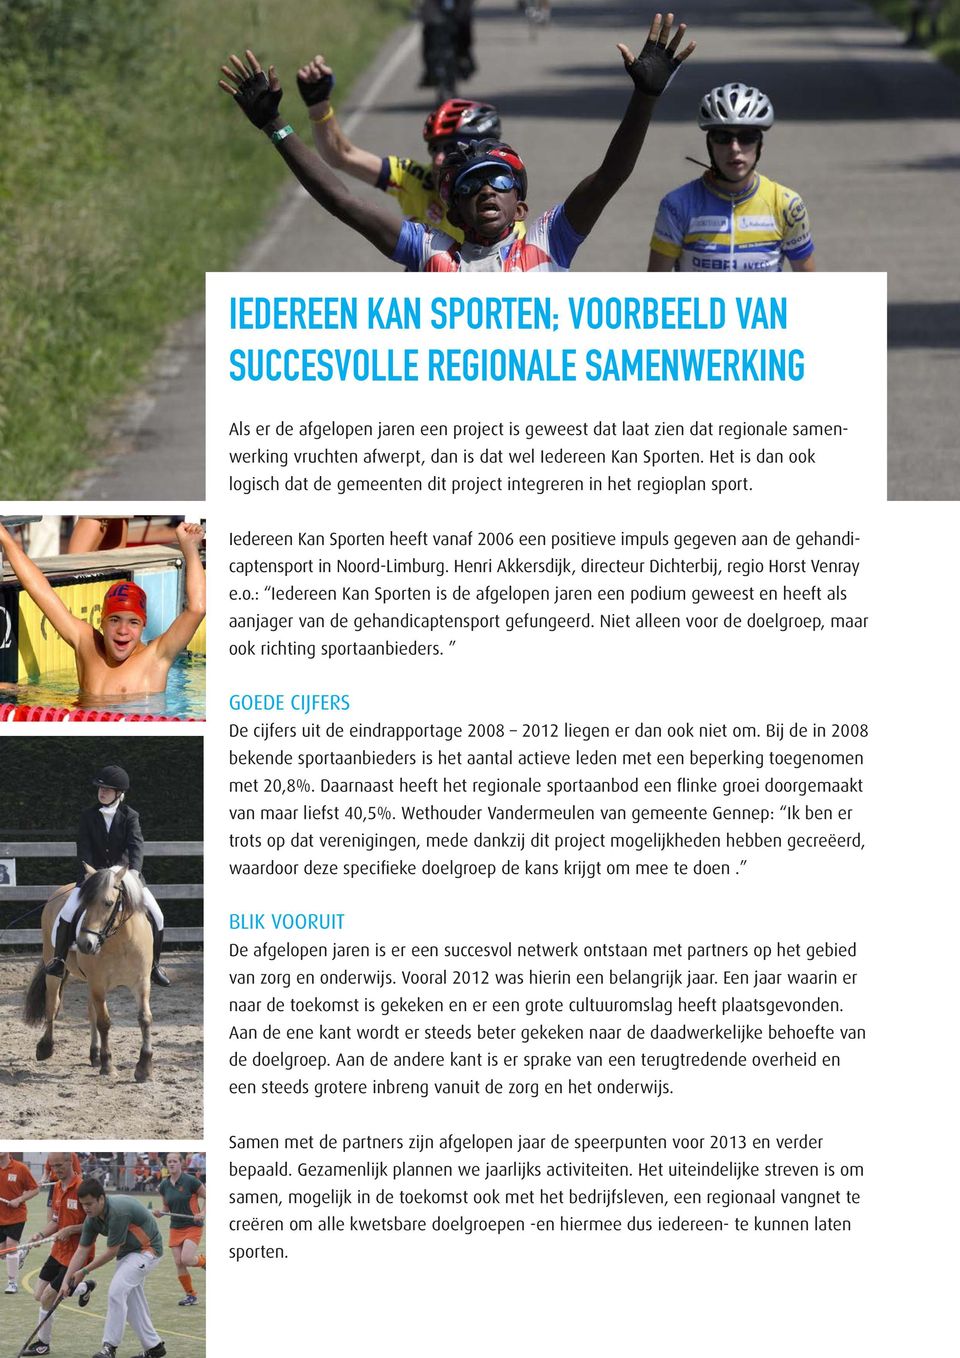 Iedereen Kan Sporten heeft vanaf 2006 een positieve impuls gegeven aan de gehandicaptensport in Noord-Limburg. Henri Akkersdijk, directeur Dichterbij, regio Horst Venray e.o.: Iedereen Kan Sporten is de afgelopen jaren een podium geweest en heeft als aanjager van de gehandicaptensport gefungeerd.